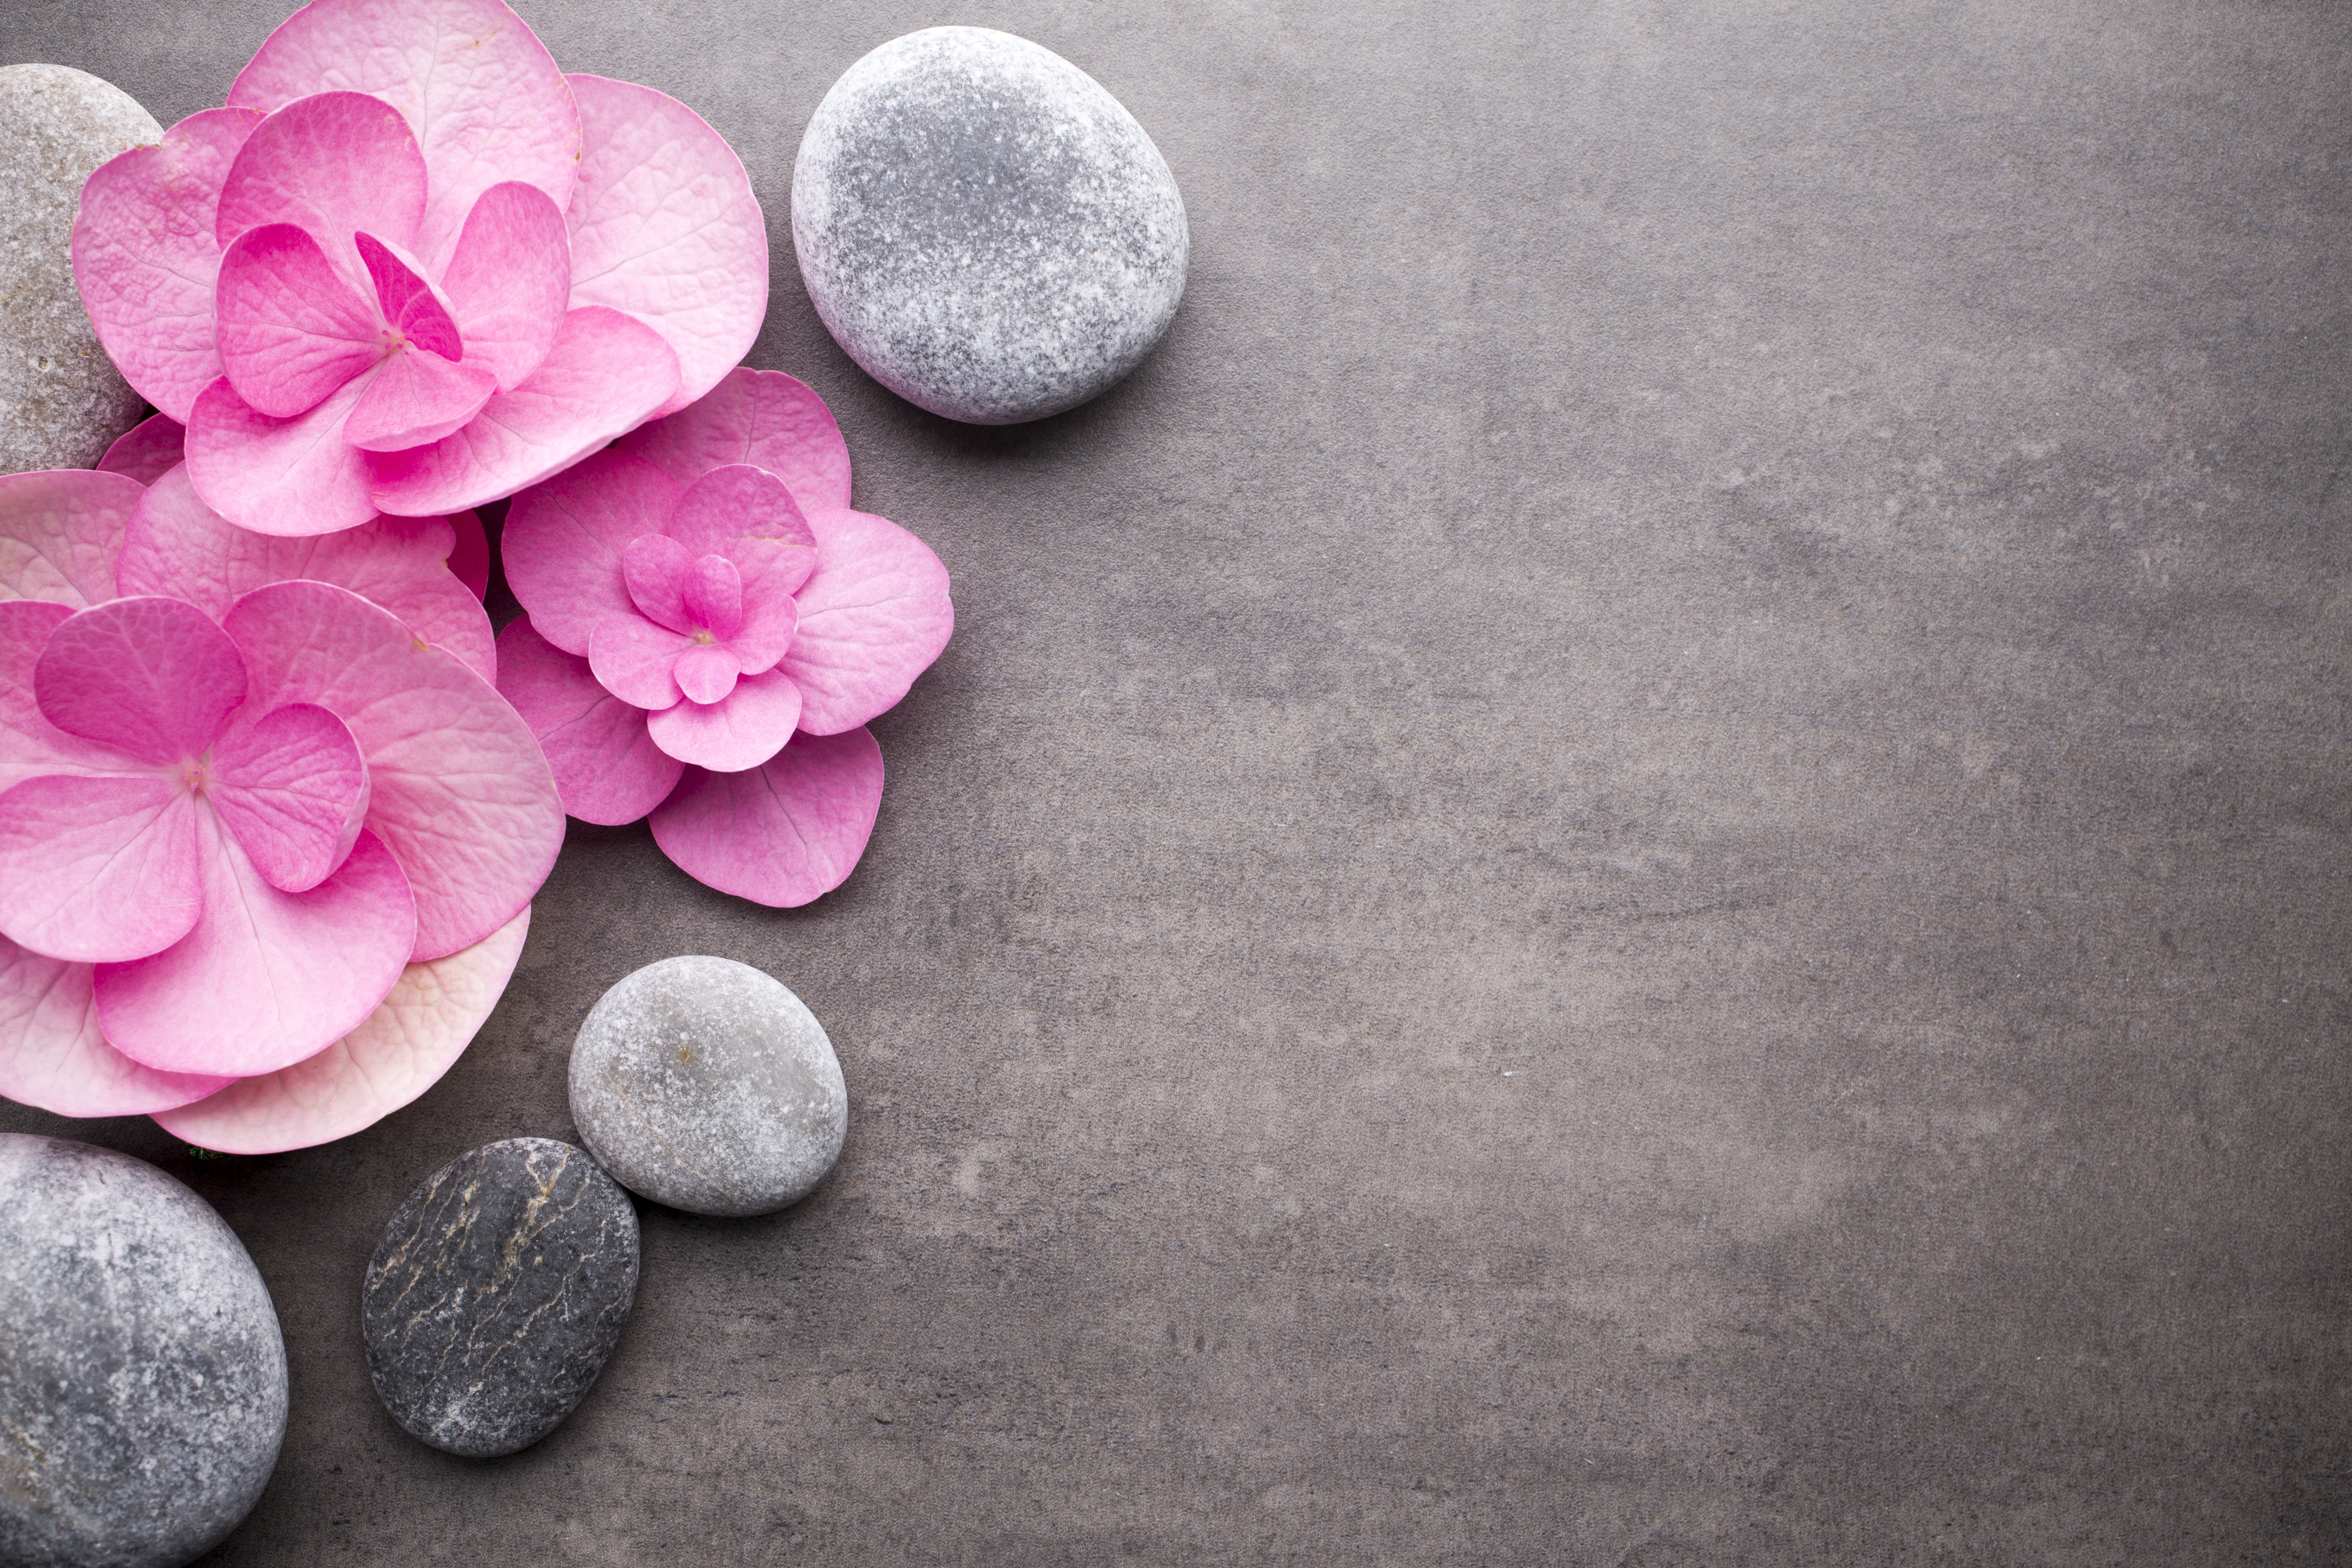 flowers, stones, pink, spa, zen, rock, solid, beauty in nature